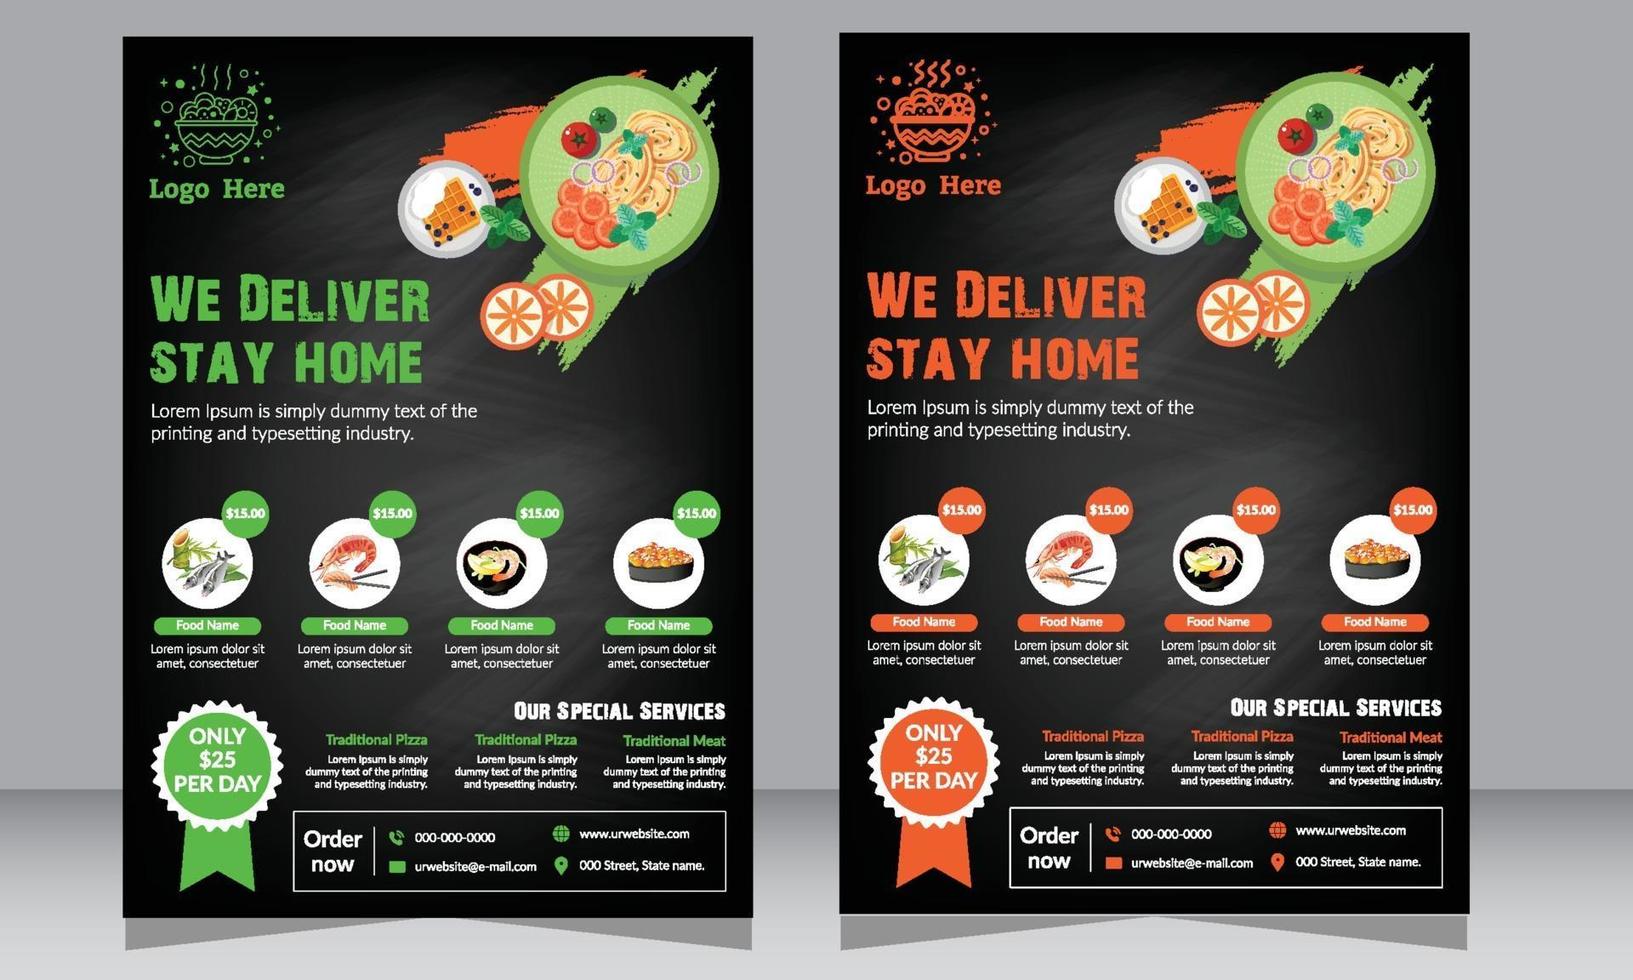 folleto de restaurante, folleto de pizzería, póster, folleto de comida vector